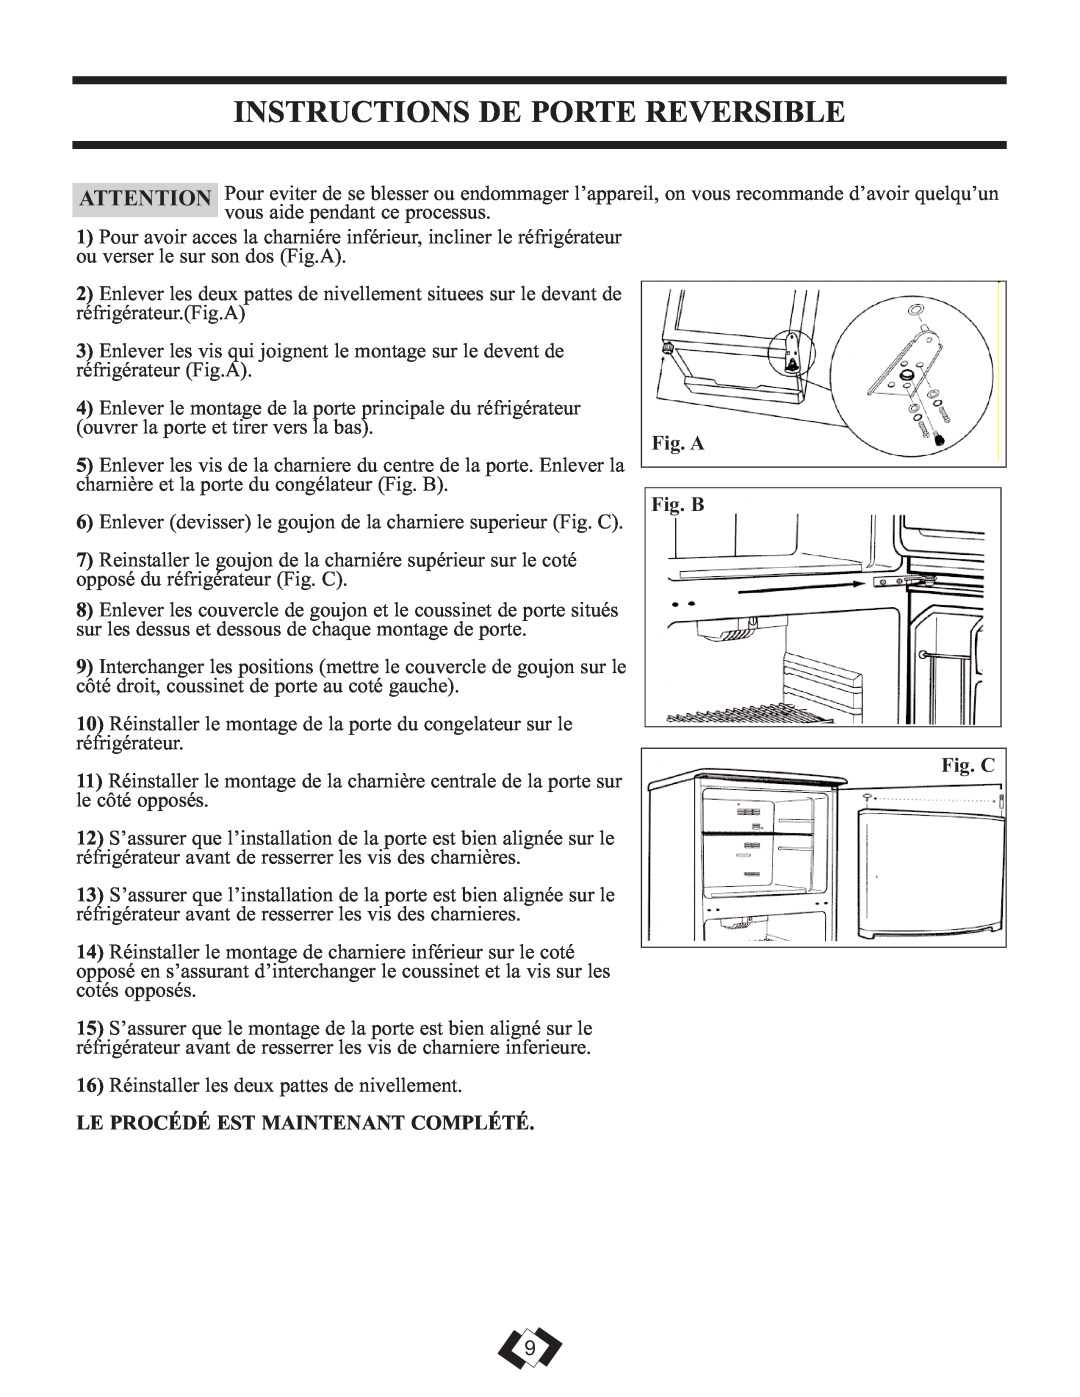 Sunbeam DFF258WSB Instructions De Porte Reversible, Fig. A, Fig. B, Fig. C, Le Procédé Est Maintenant Complété 